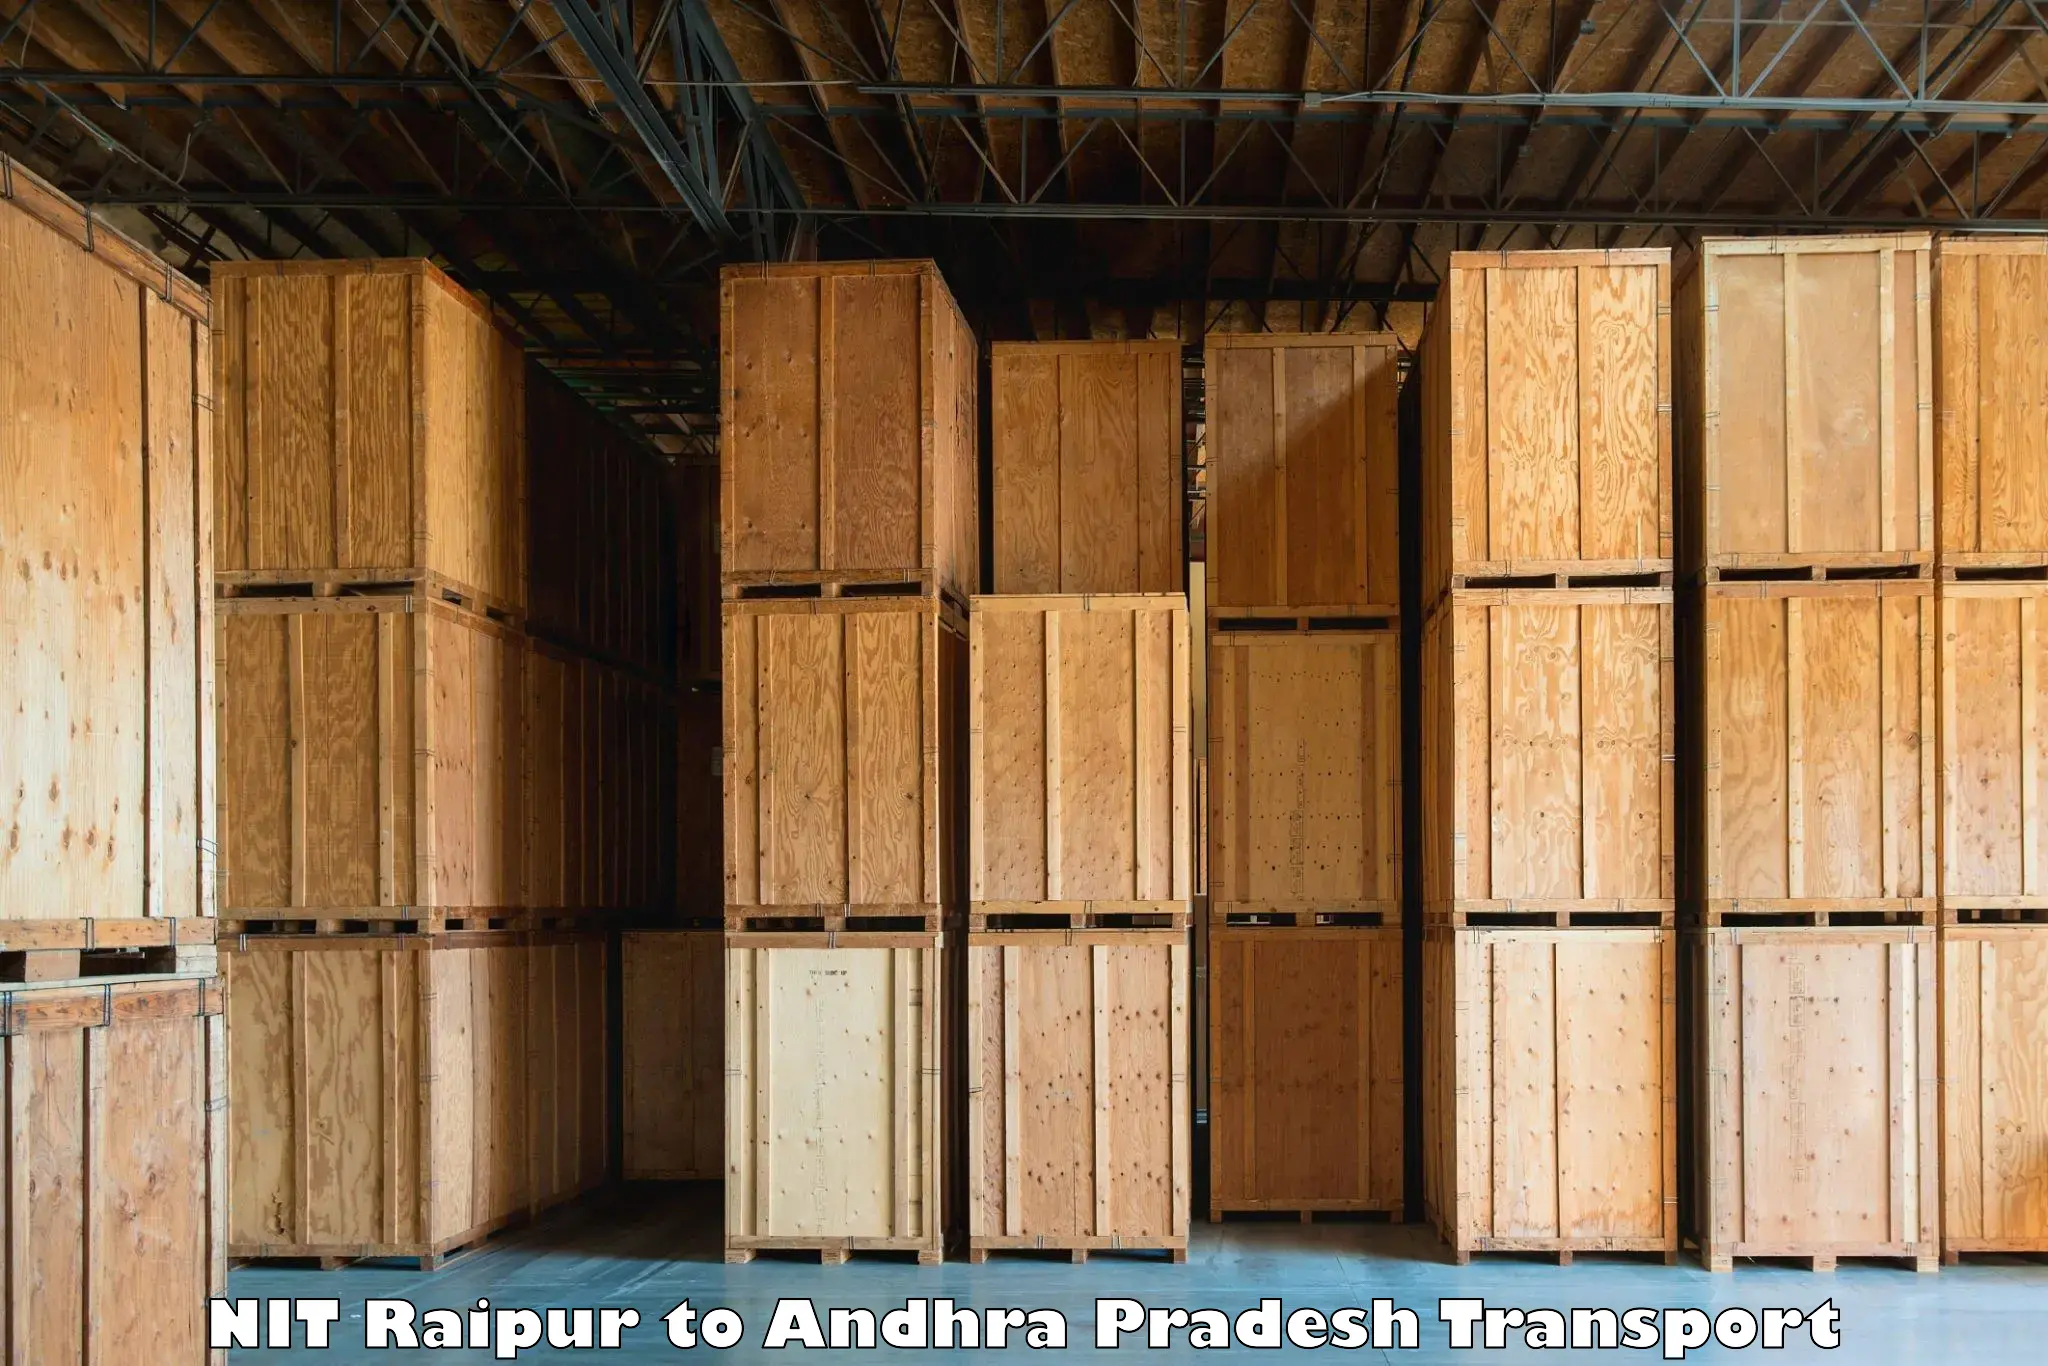 Lorry transport service NIT Raipur to Paderu